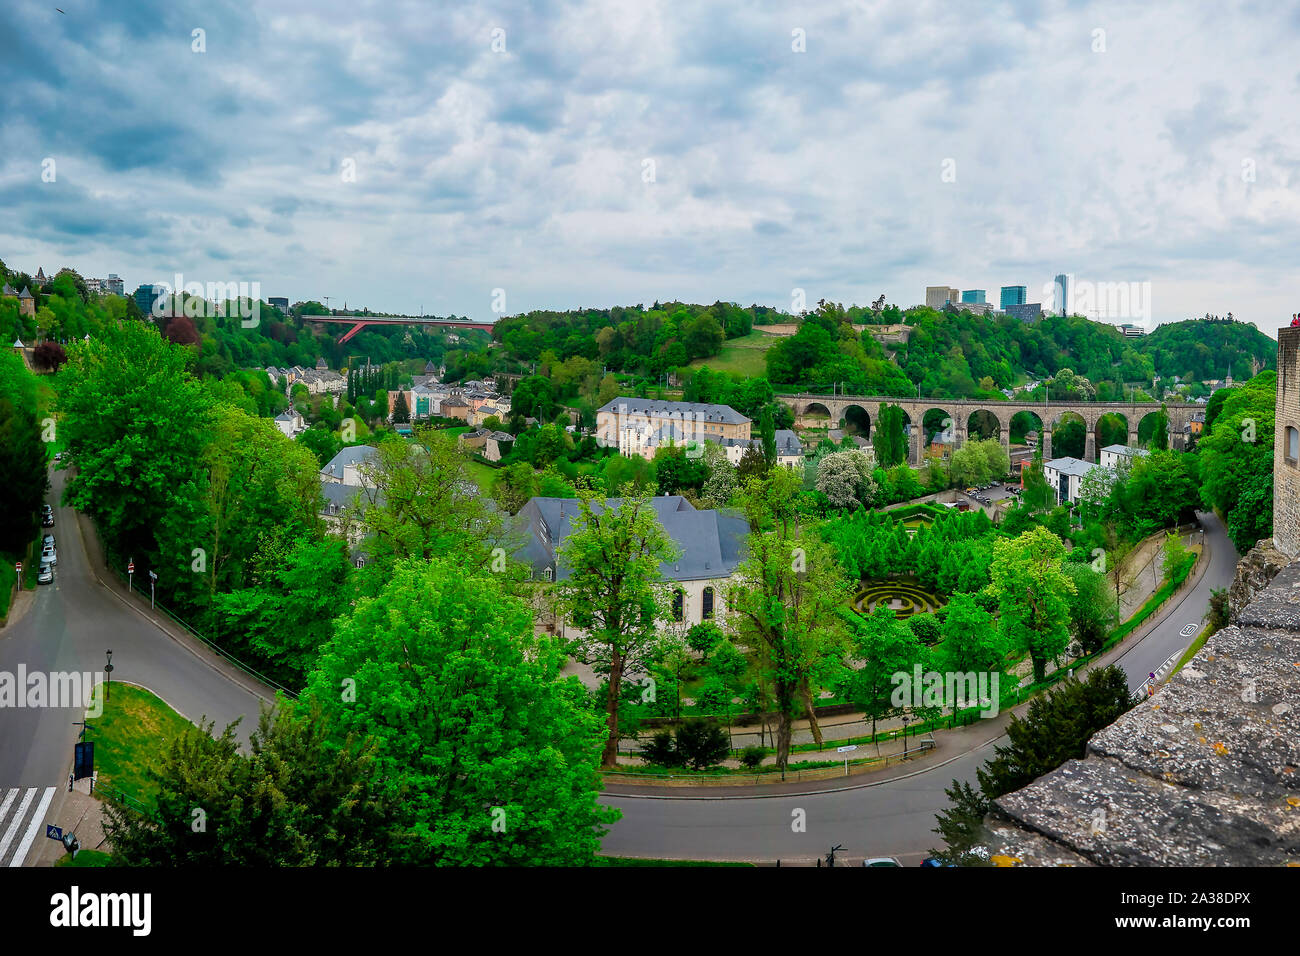 View from Le Chemin de la Corniche, Luxembourg City, Luxembourg Stock Photo